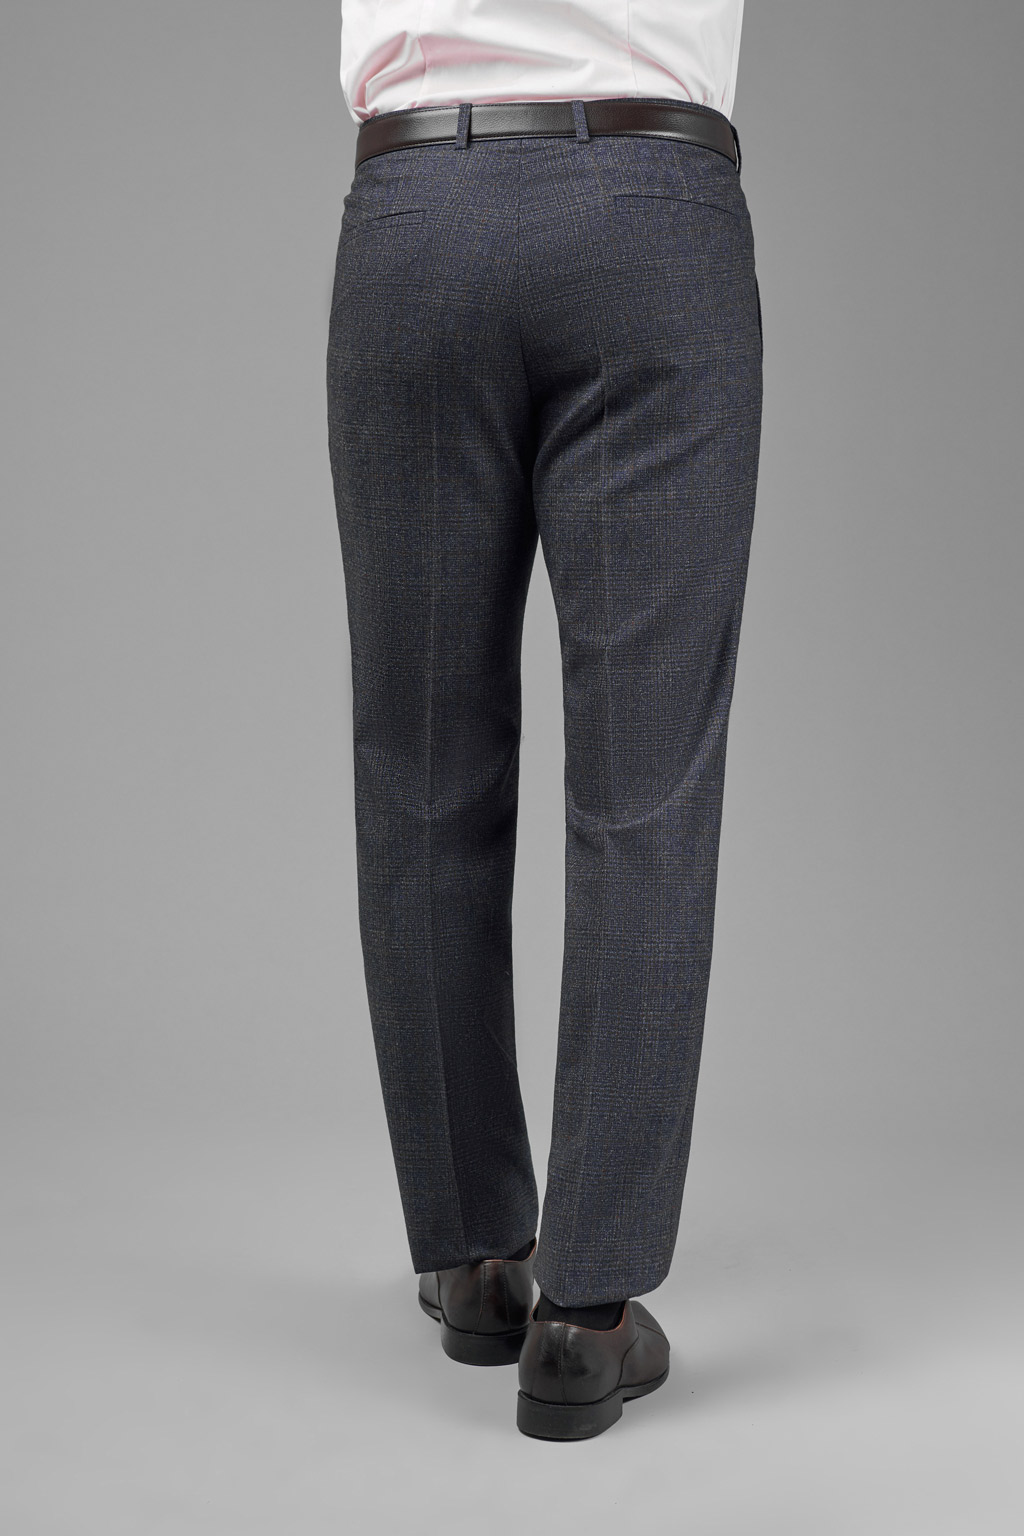 Костюмные брюки из итальянской ткани Vitale Barberis Slim Fit